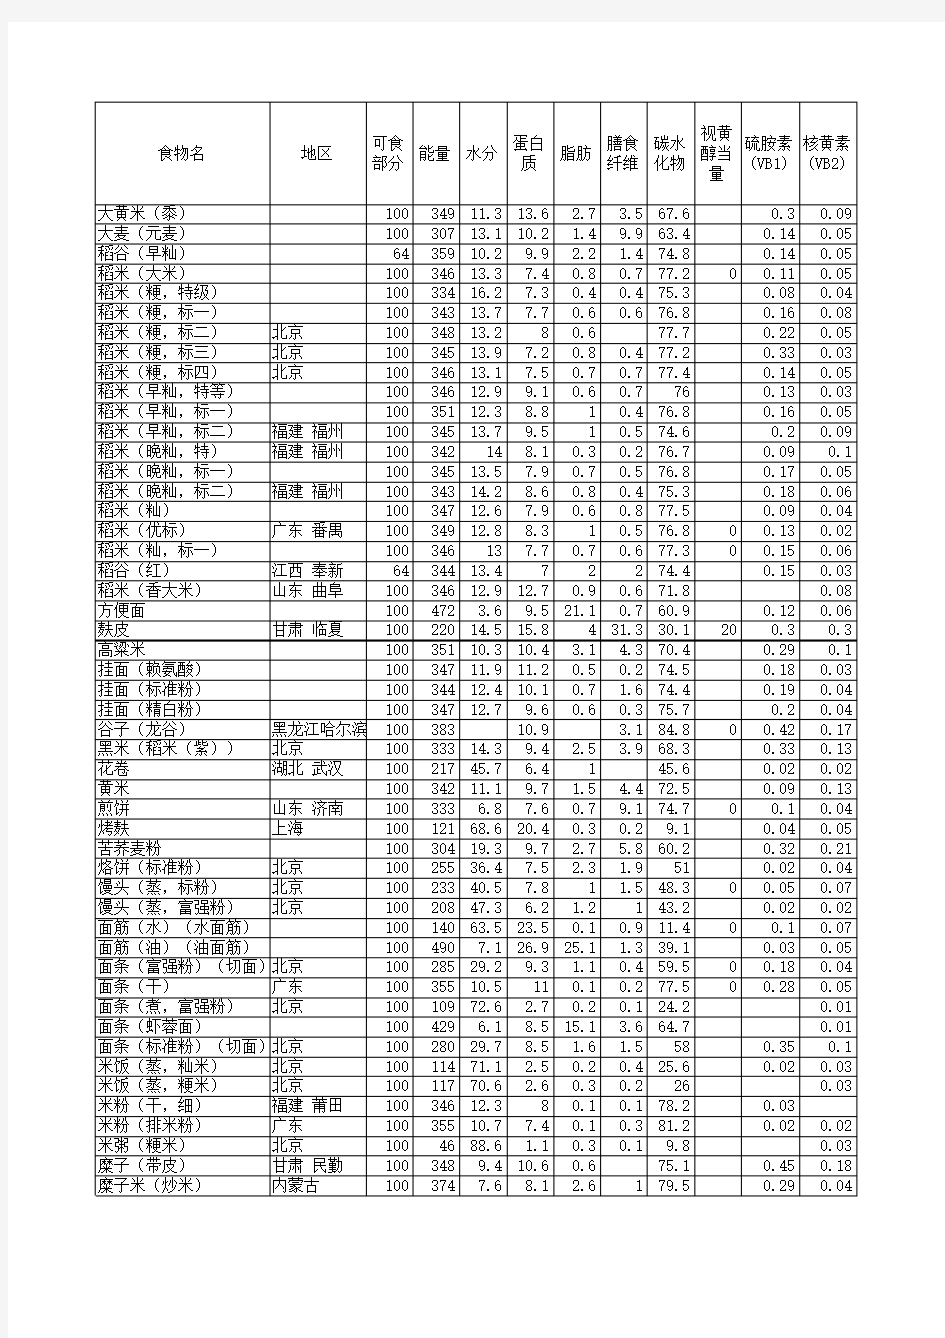 中国食物成分表(修正版)